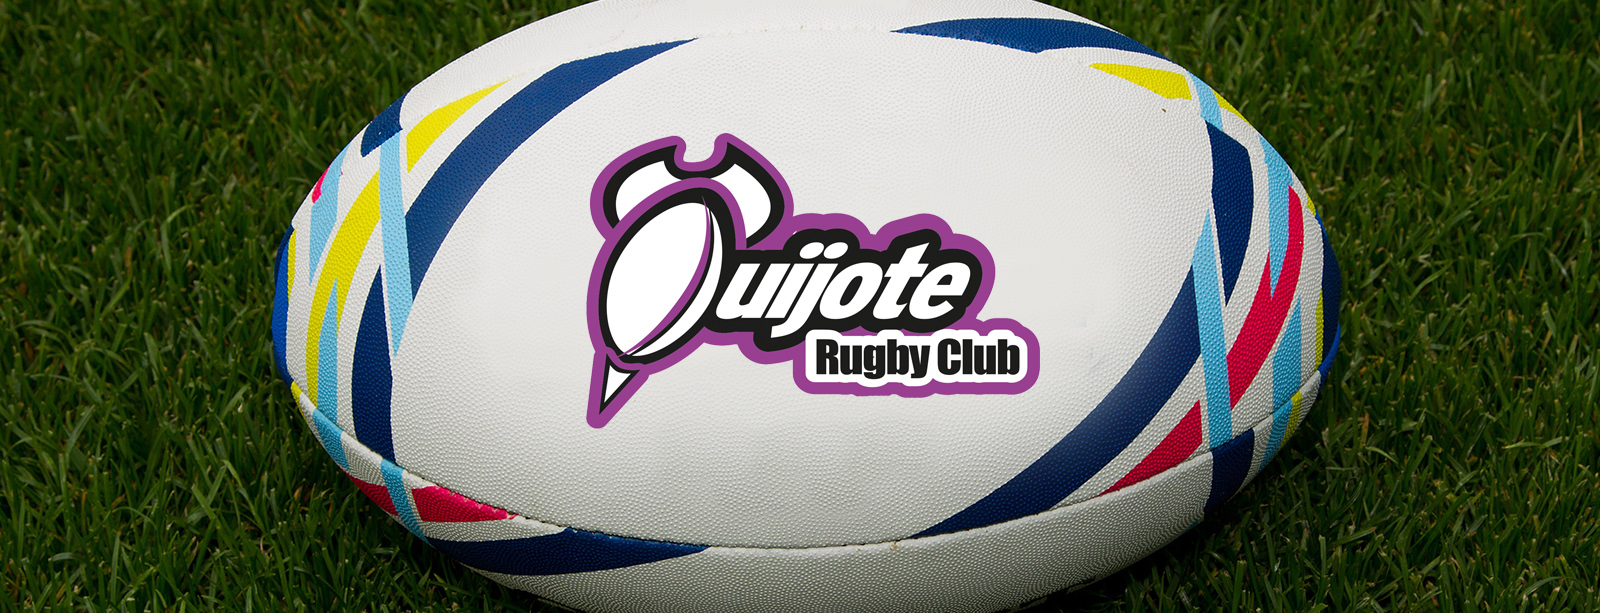 Agenda del Quijote Rugby Club para el fin de semana